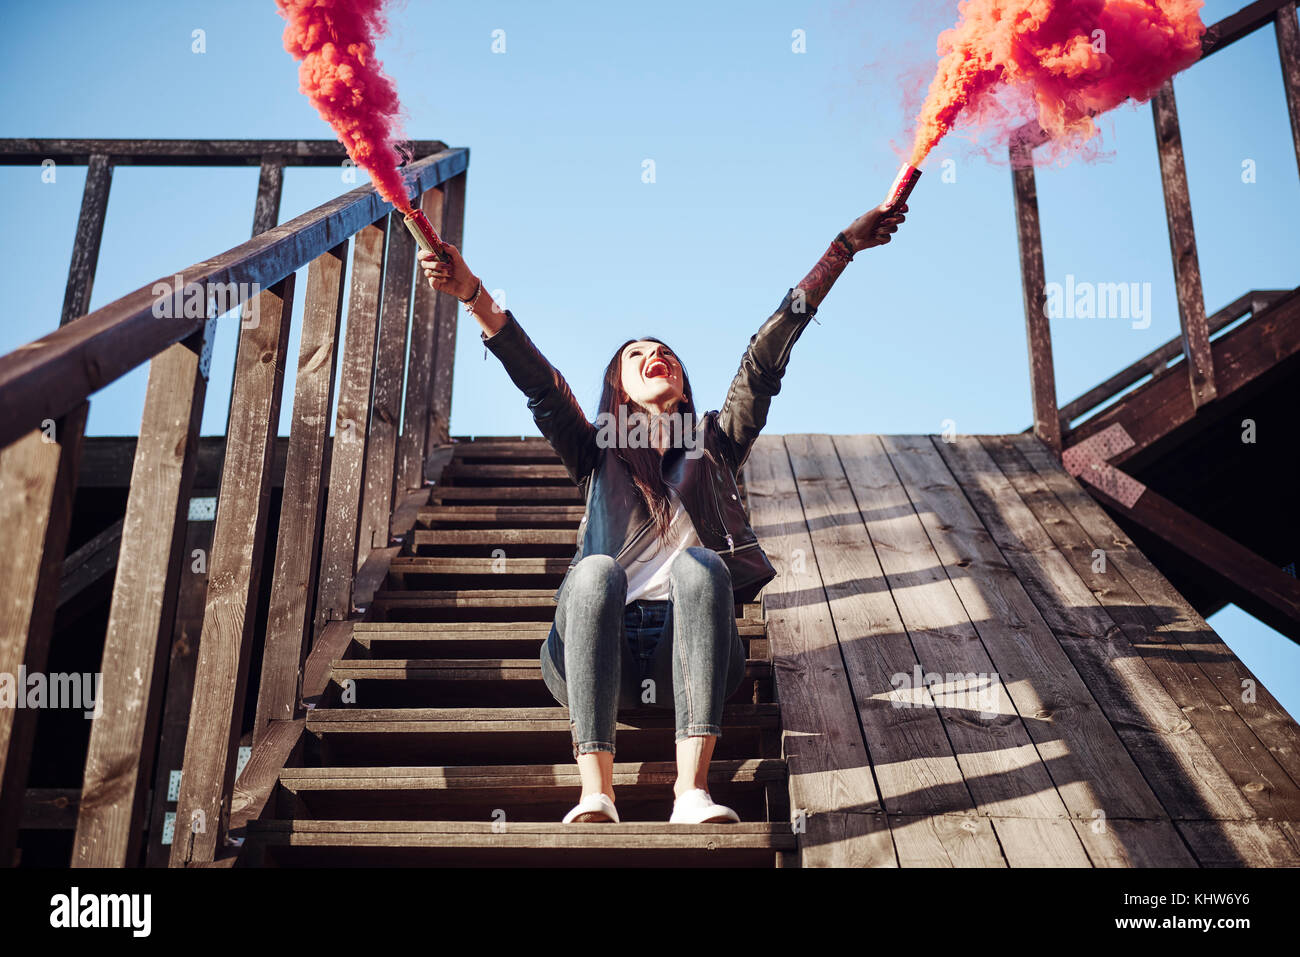 Giovane donna seduta sui gradini in legno, tenendo Razzi manuali, rosso fumo versando da flares, basso angolo di visione Foto Stock